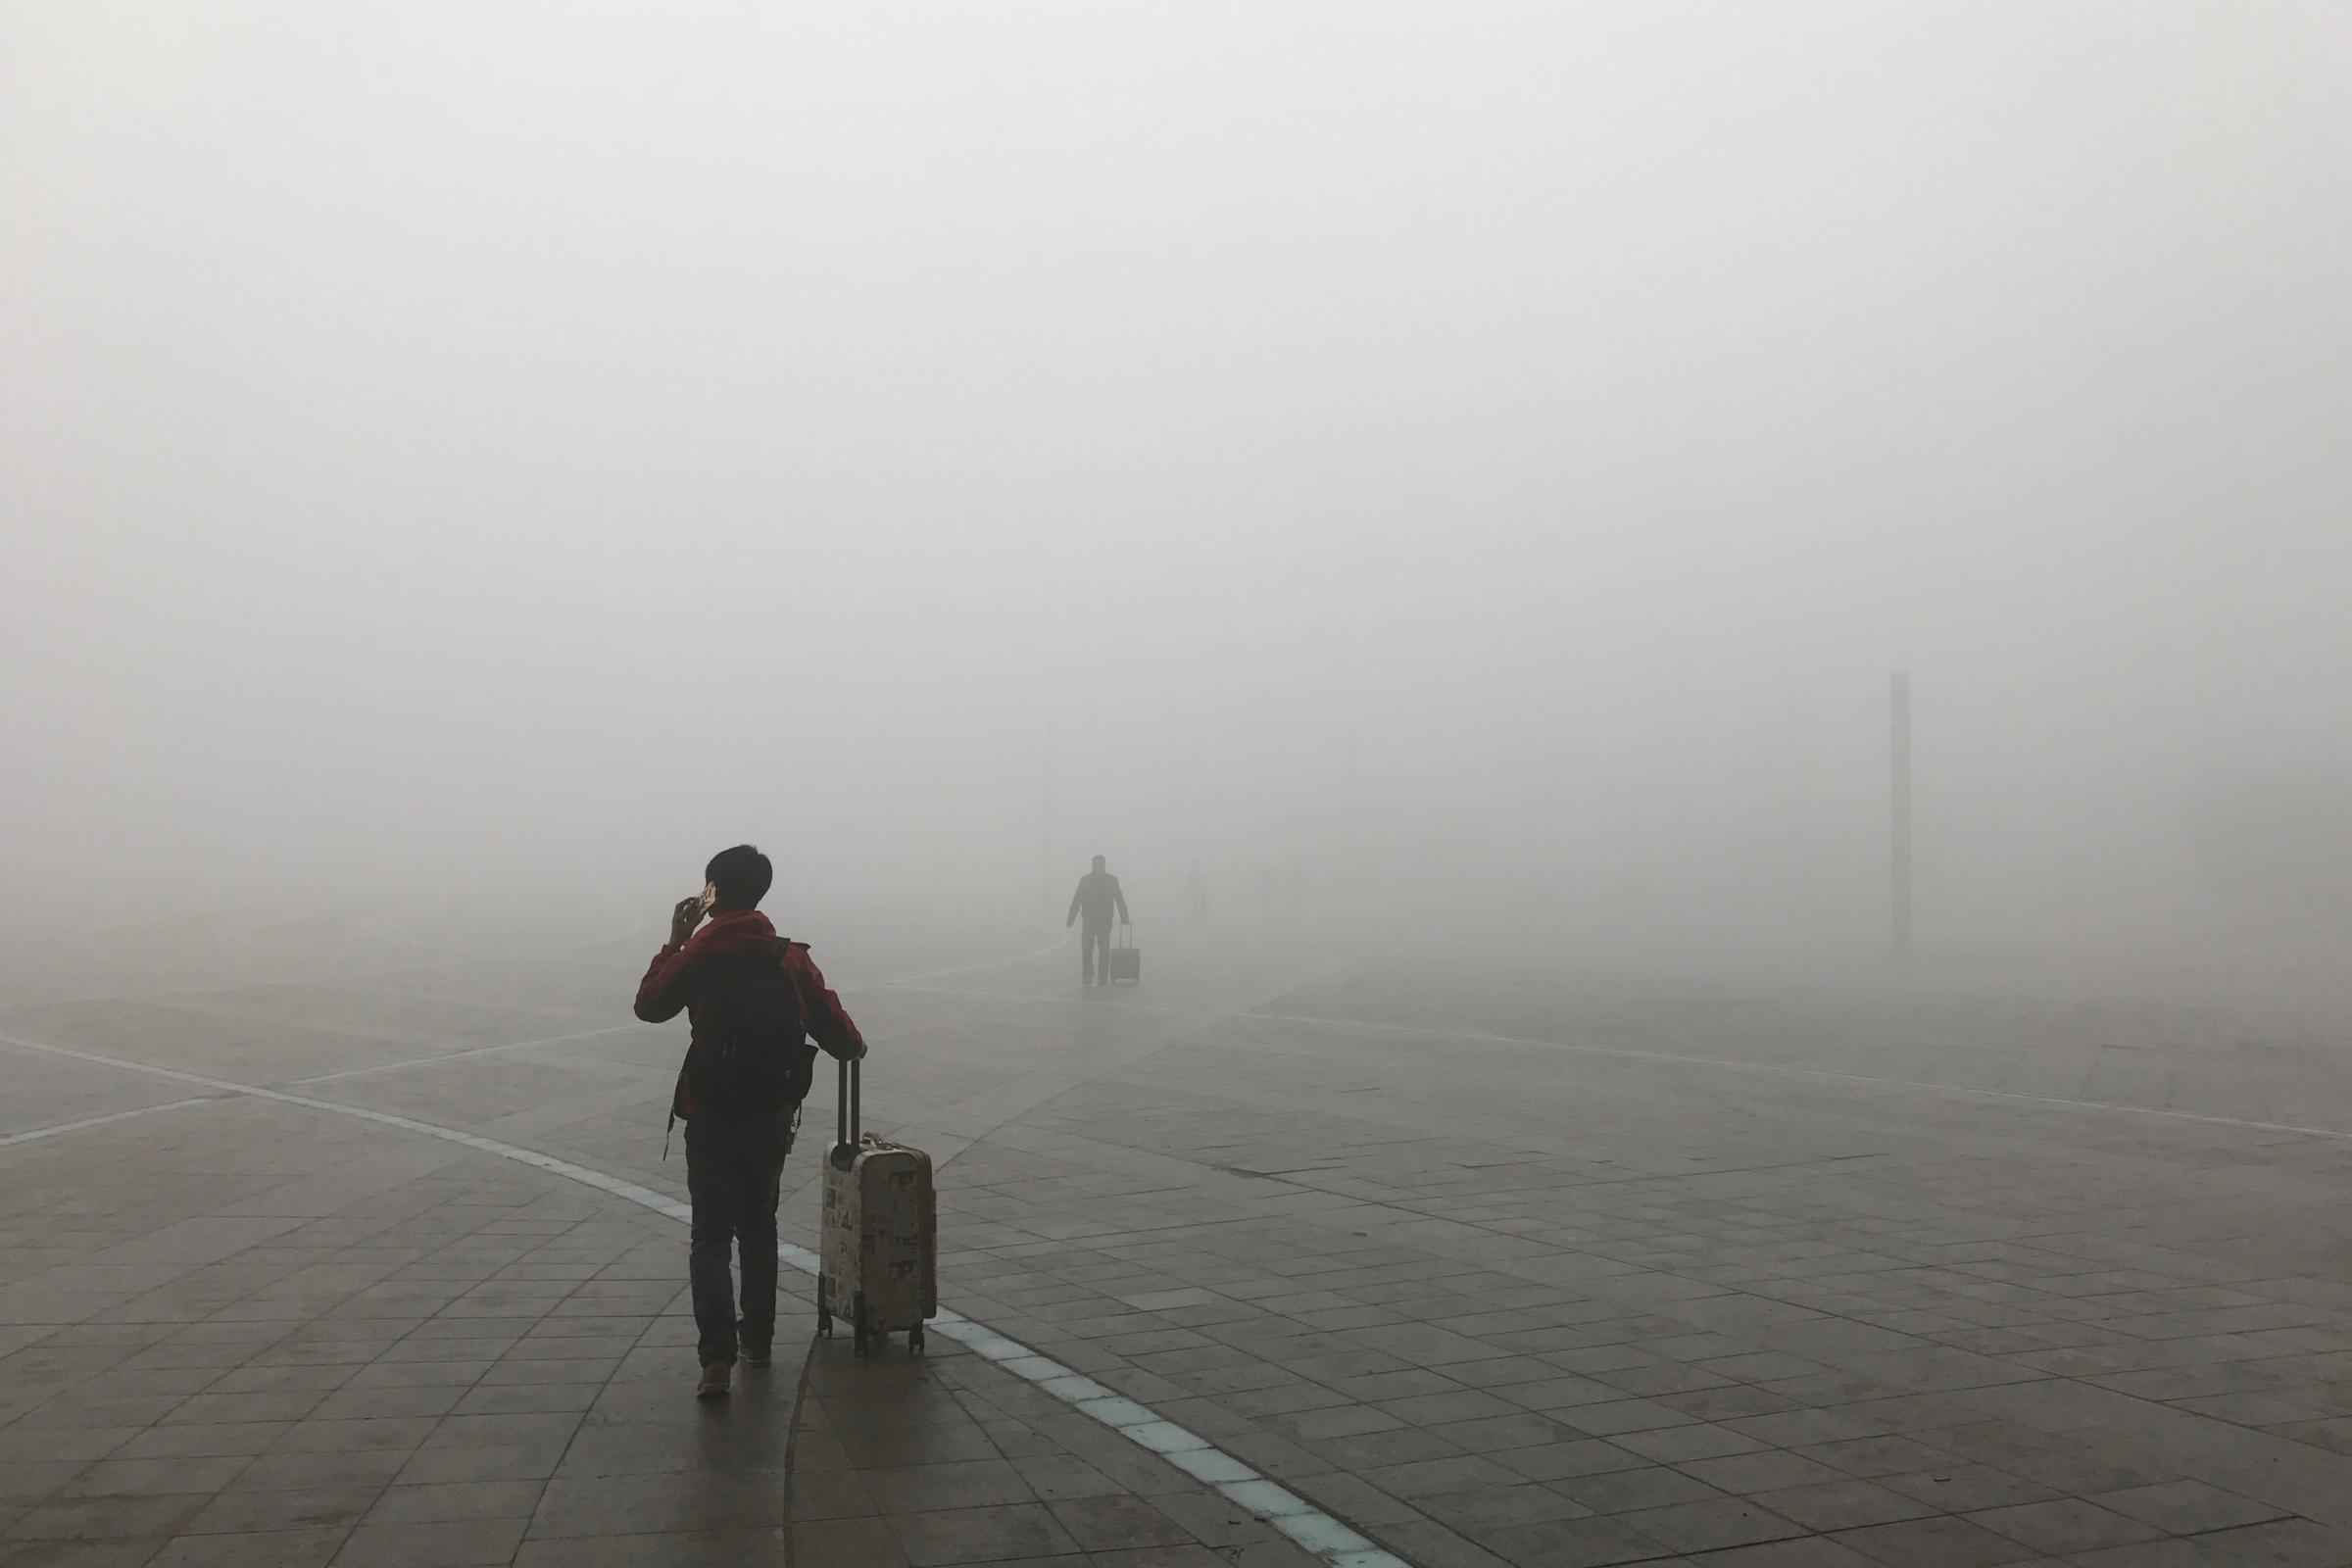 Zhengzhou Suffers Heavy Smog